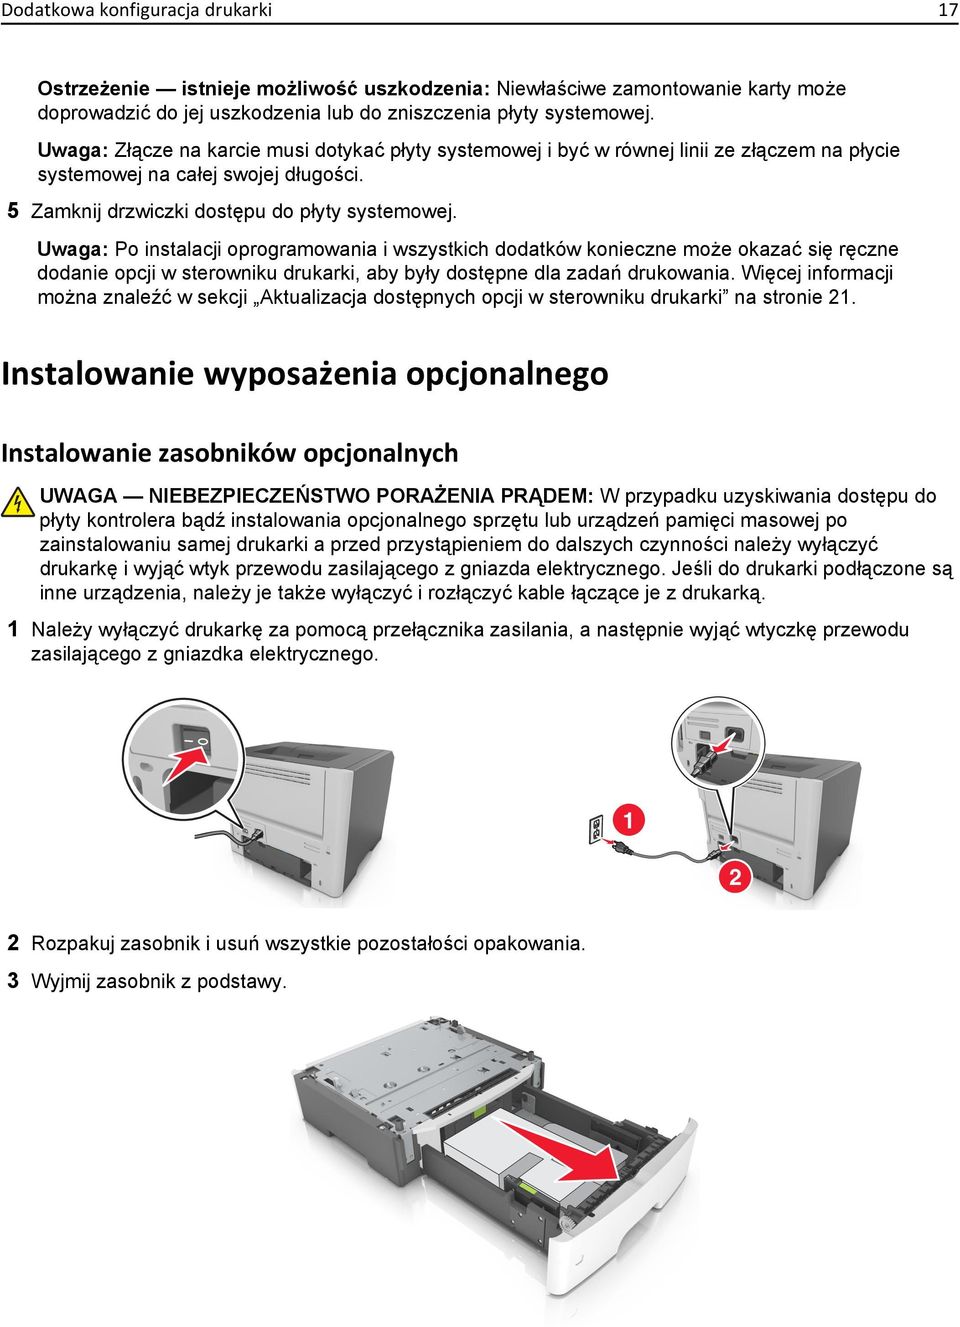 Uwaga: Po instalacji oprogramowania i wszystkich dodatków konieczne może okazać się ręczne dodanie opcji w sterowniku drukarki, aby były dostępne dla zadań drukowania.